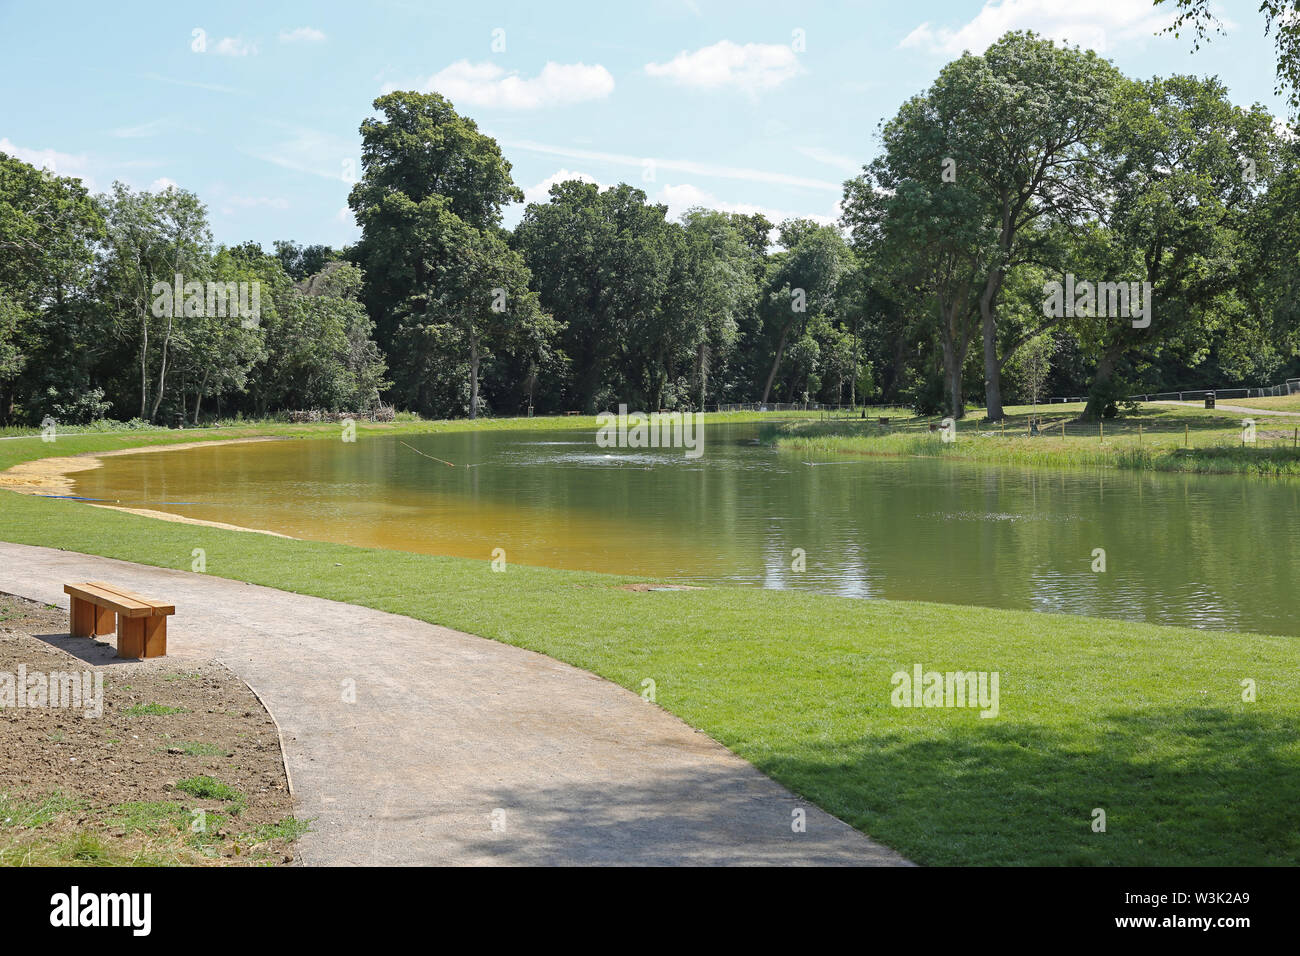 Le nouveau lac de baignade sauvage dans les motifs de Beckenham Place Park, London, UK, montré la semaine avant son ouverture le 20 juillet 2019 Banque D'Images